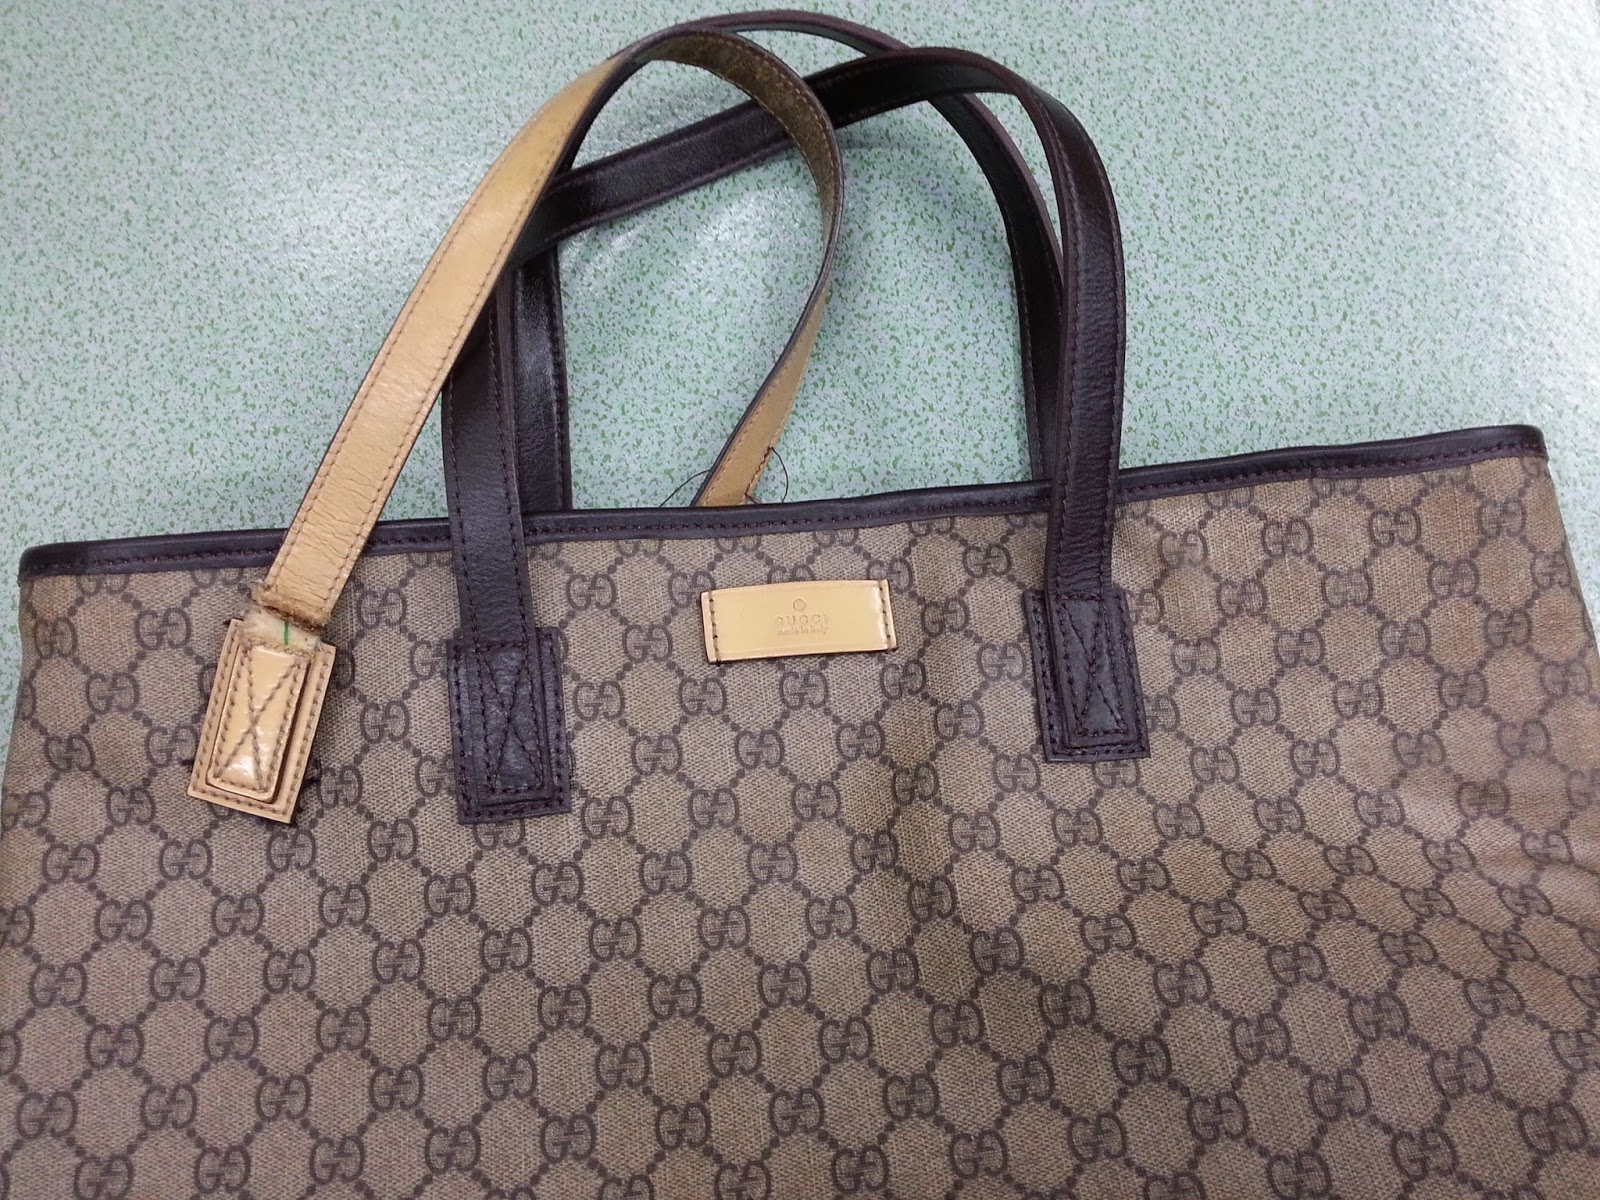 Gucci Handbag Repair | IQS Executive